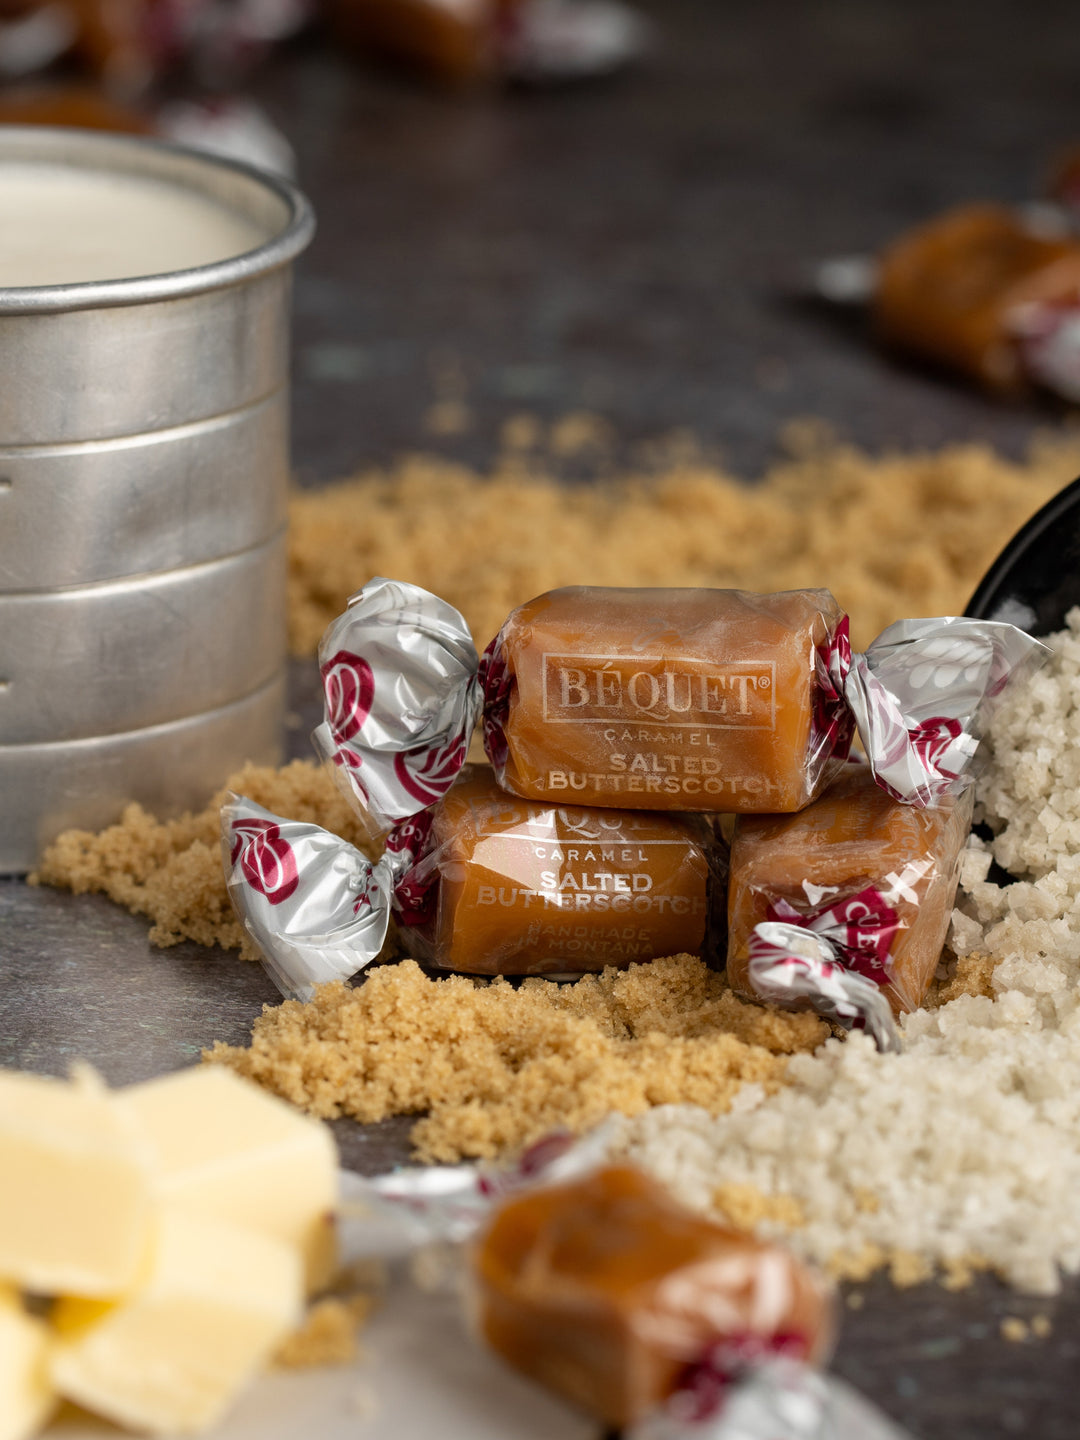 classic bequet caramel#caramel-variety_salted-butterscotch